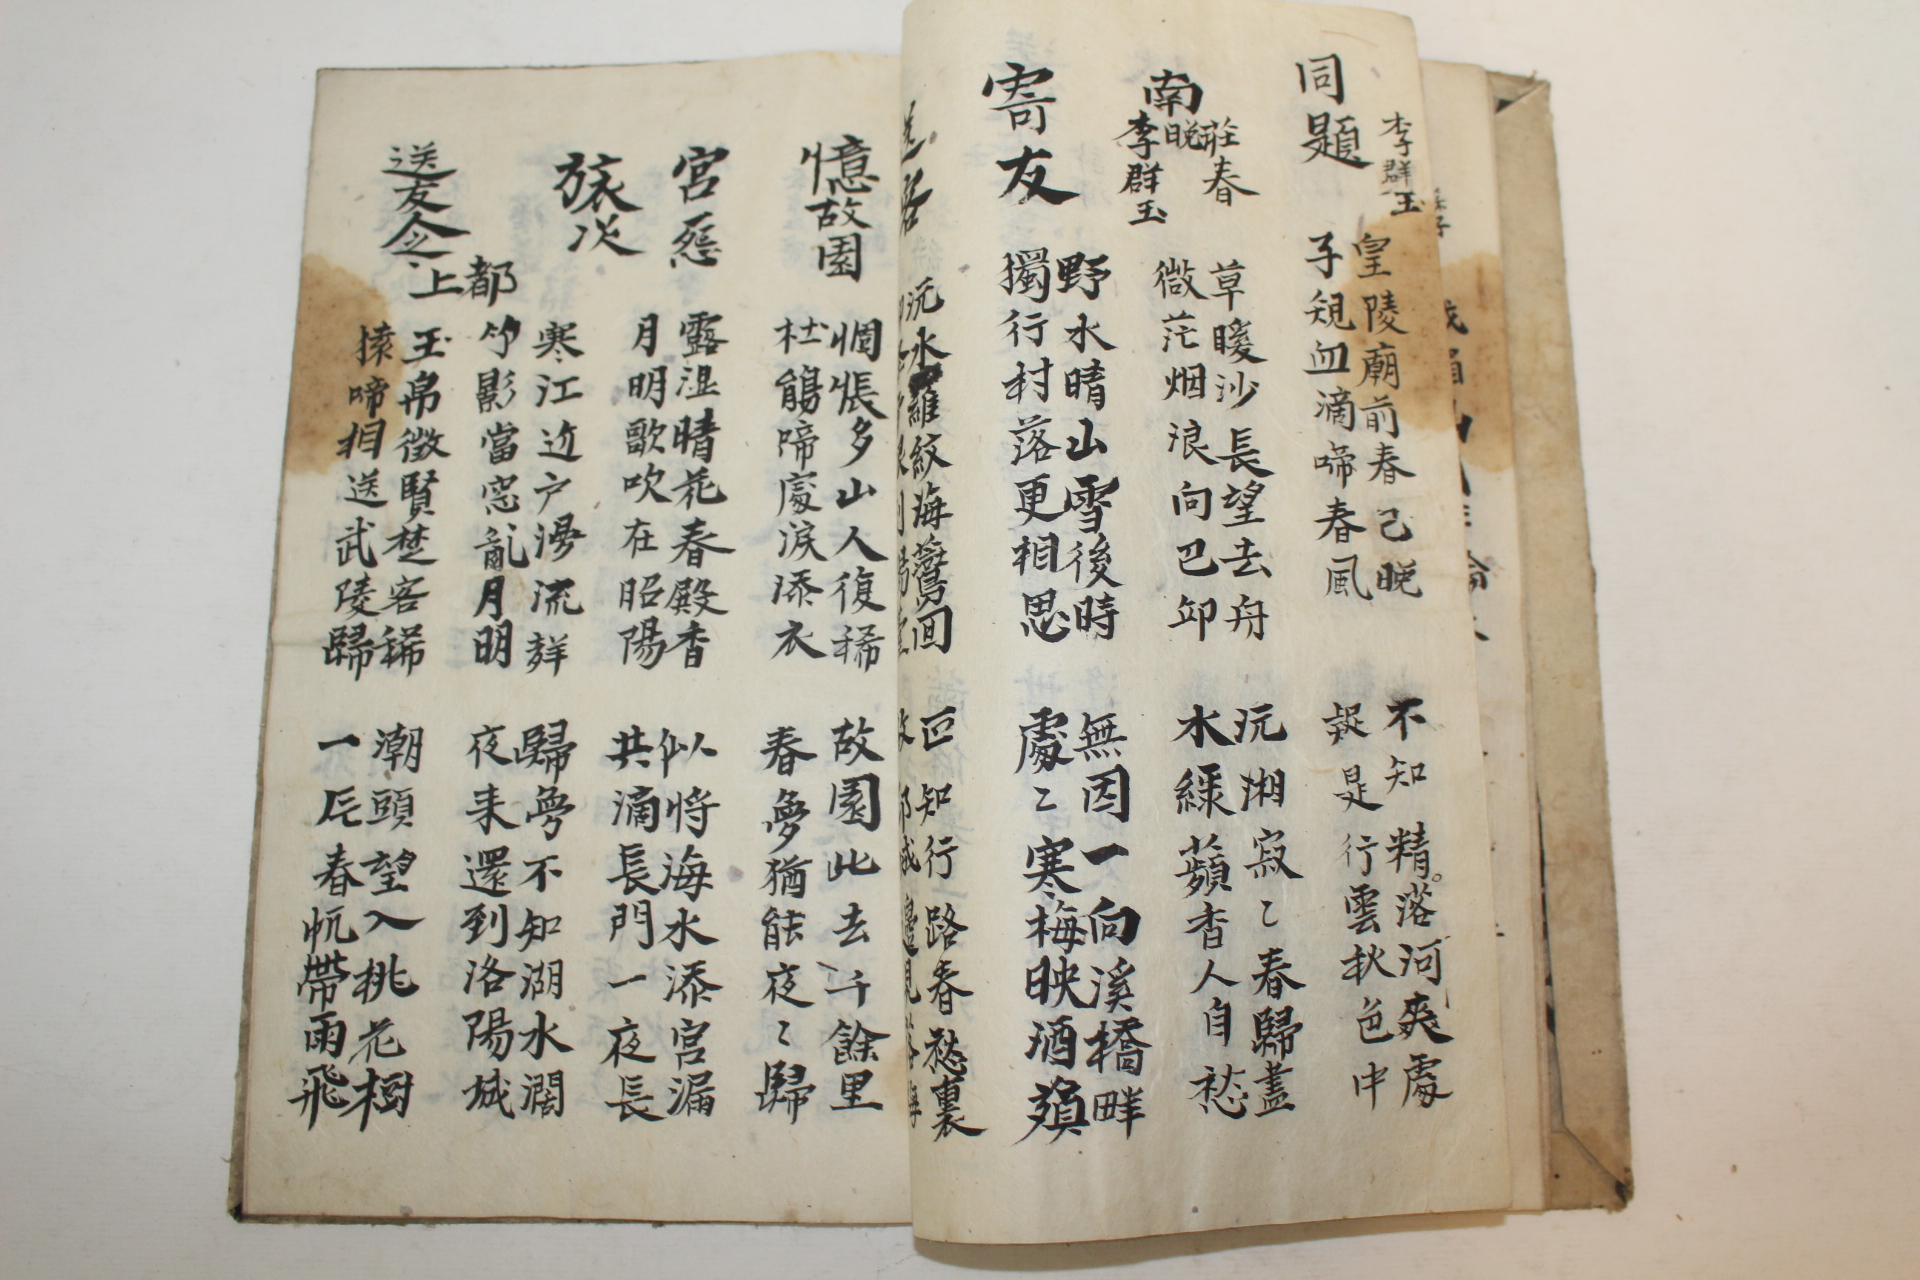 조선시대 필사본 장편(長篇) 1책